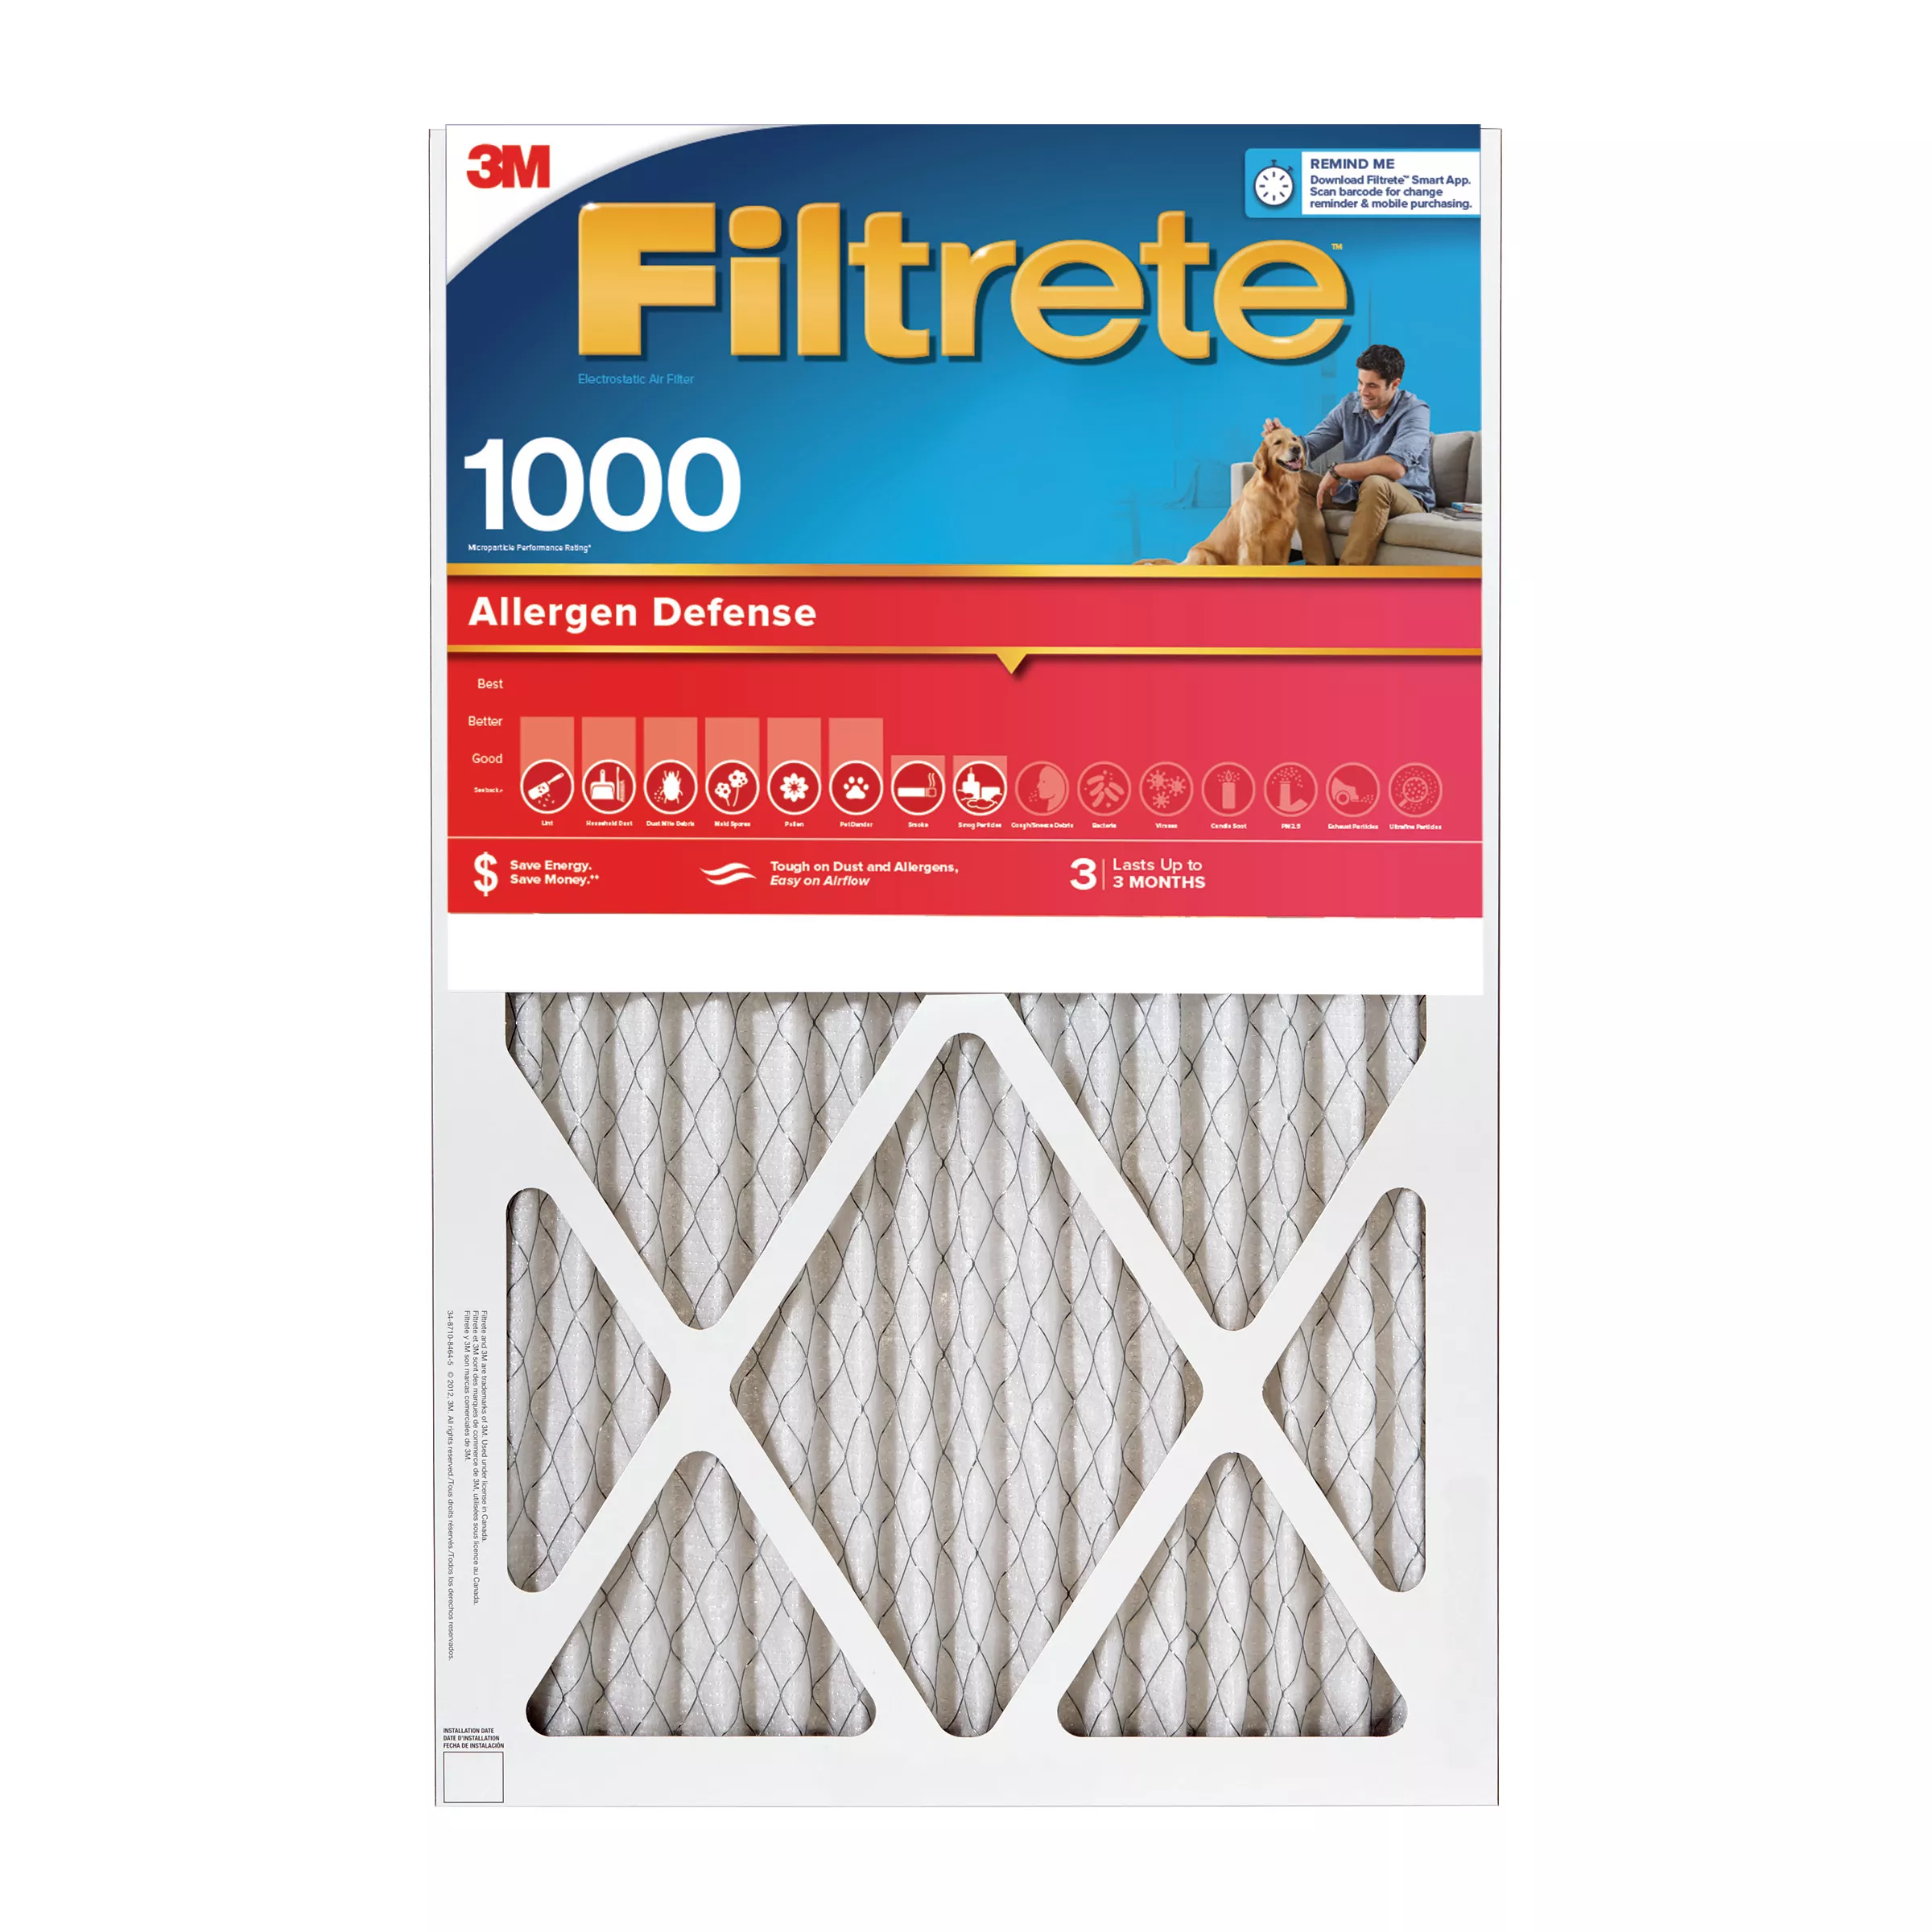 Filtrete™ Allergen Defense Air Filter, 1000 MPR, 9848-4, 14 in x 18 in x
1 in (35,5 cm x 45,7 cm x 2,5 cm)